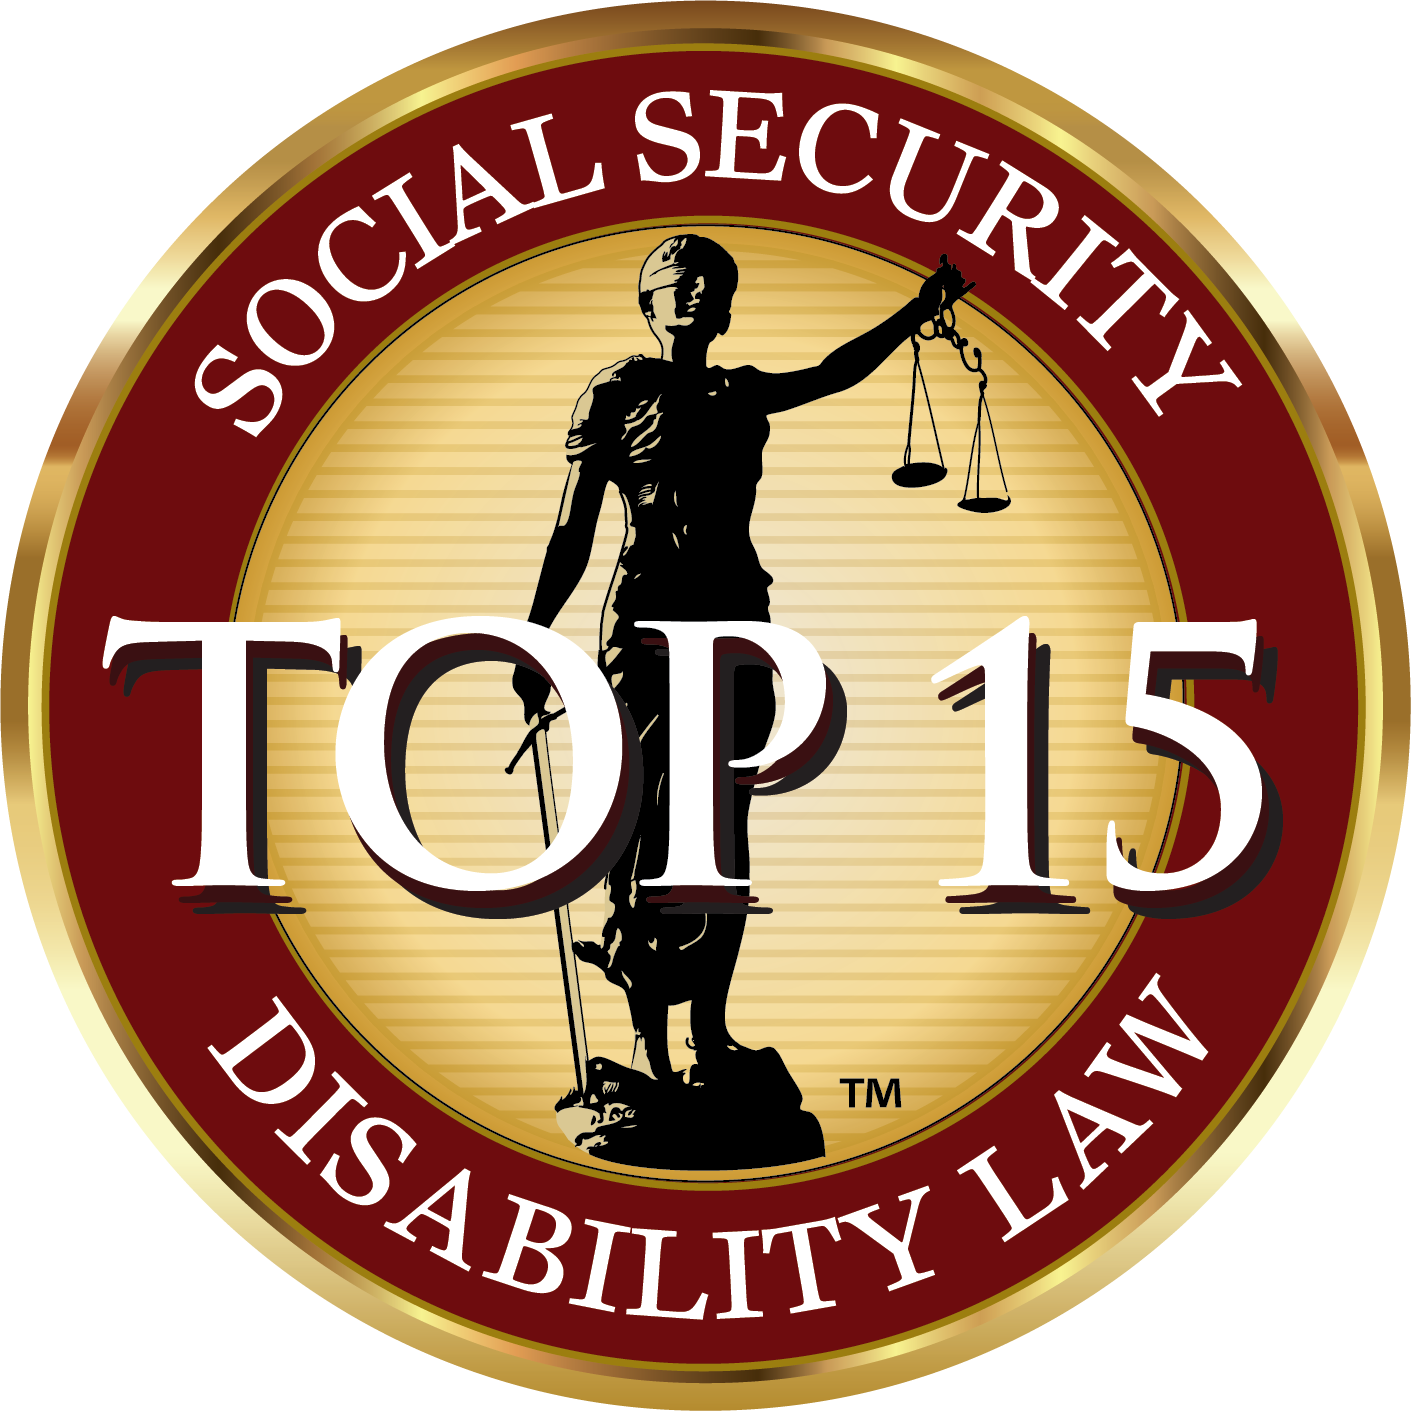 top 15 Social Security Member Seal